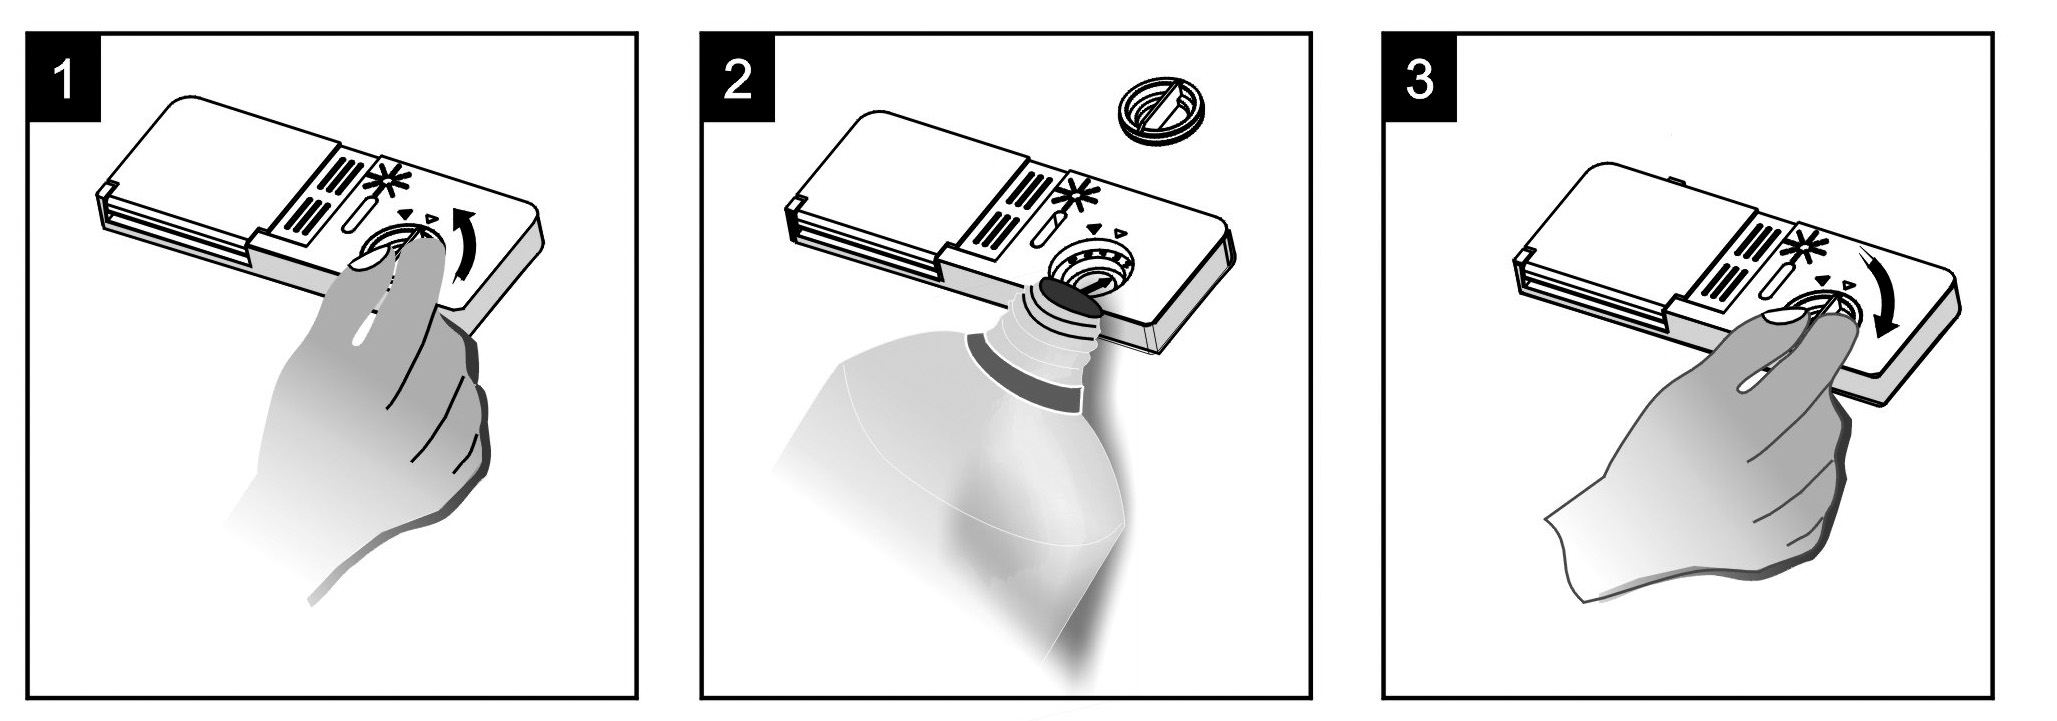 1. Dávkovač otevřete otočením víčka do polohy šipky otevřeno (vlevo) a zdvihnutím. 2. Do dávkovače nalijte leštidlo, dávejte pozor, abyste ho nepřelili. 3.